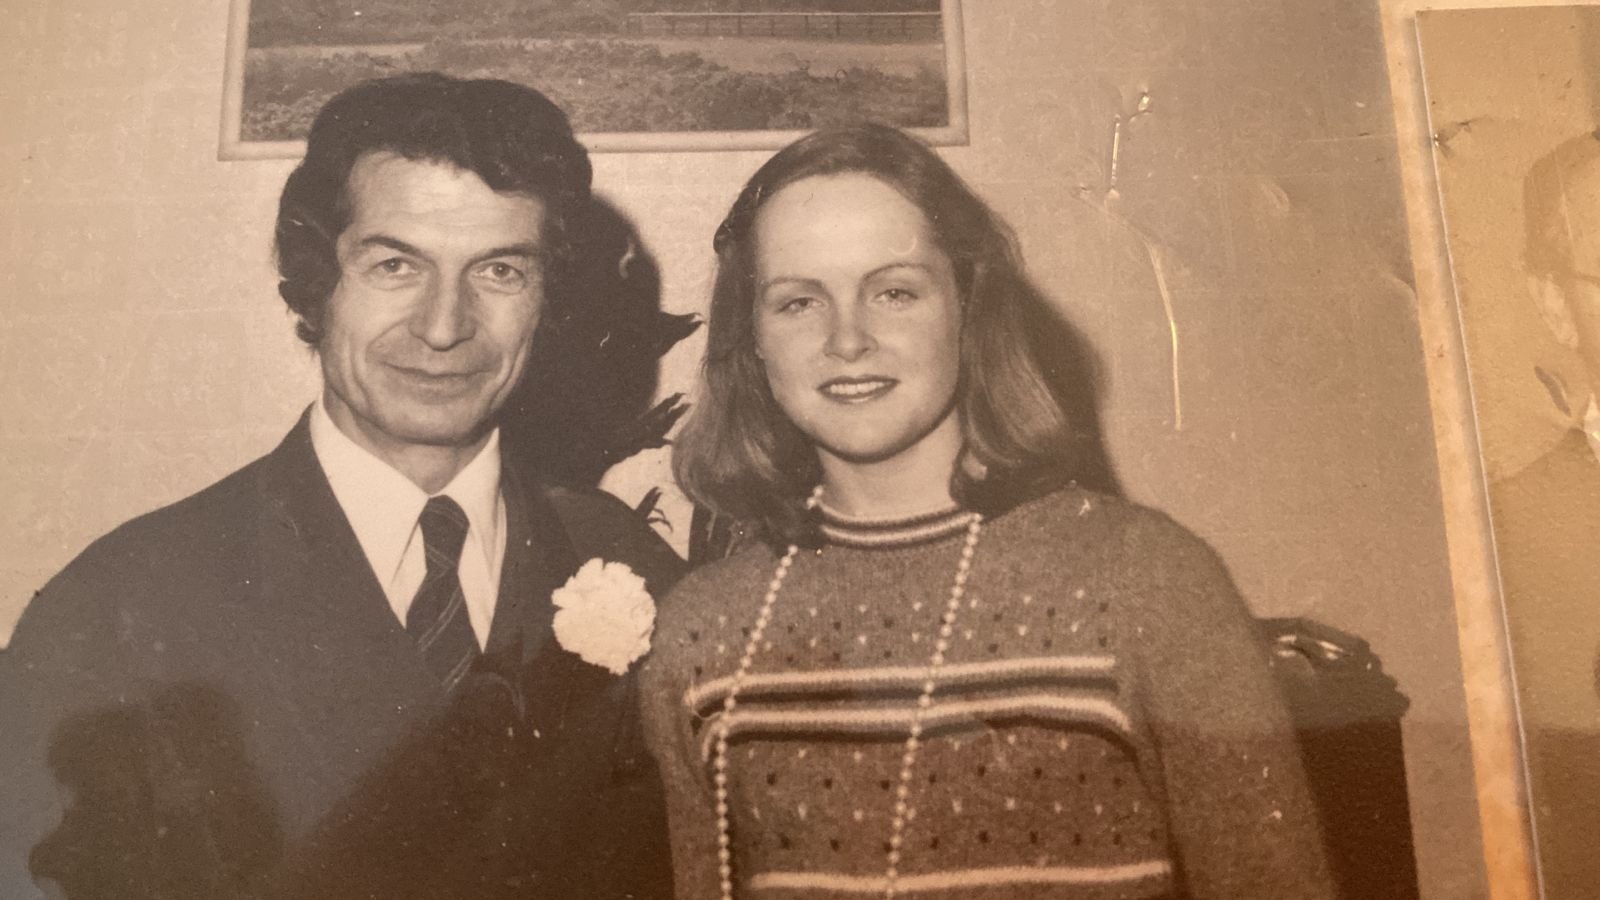 Orang tua dari Leyla Yvonne Ergil, Tanju Ergil (kiri) dan Angela Croal selama pernikahan mereka, di London, Inggris, 25 Januari 1974. (Foto oleh Leyla Yvonne Ergil)